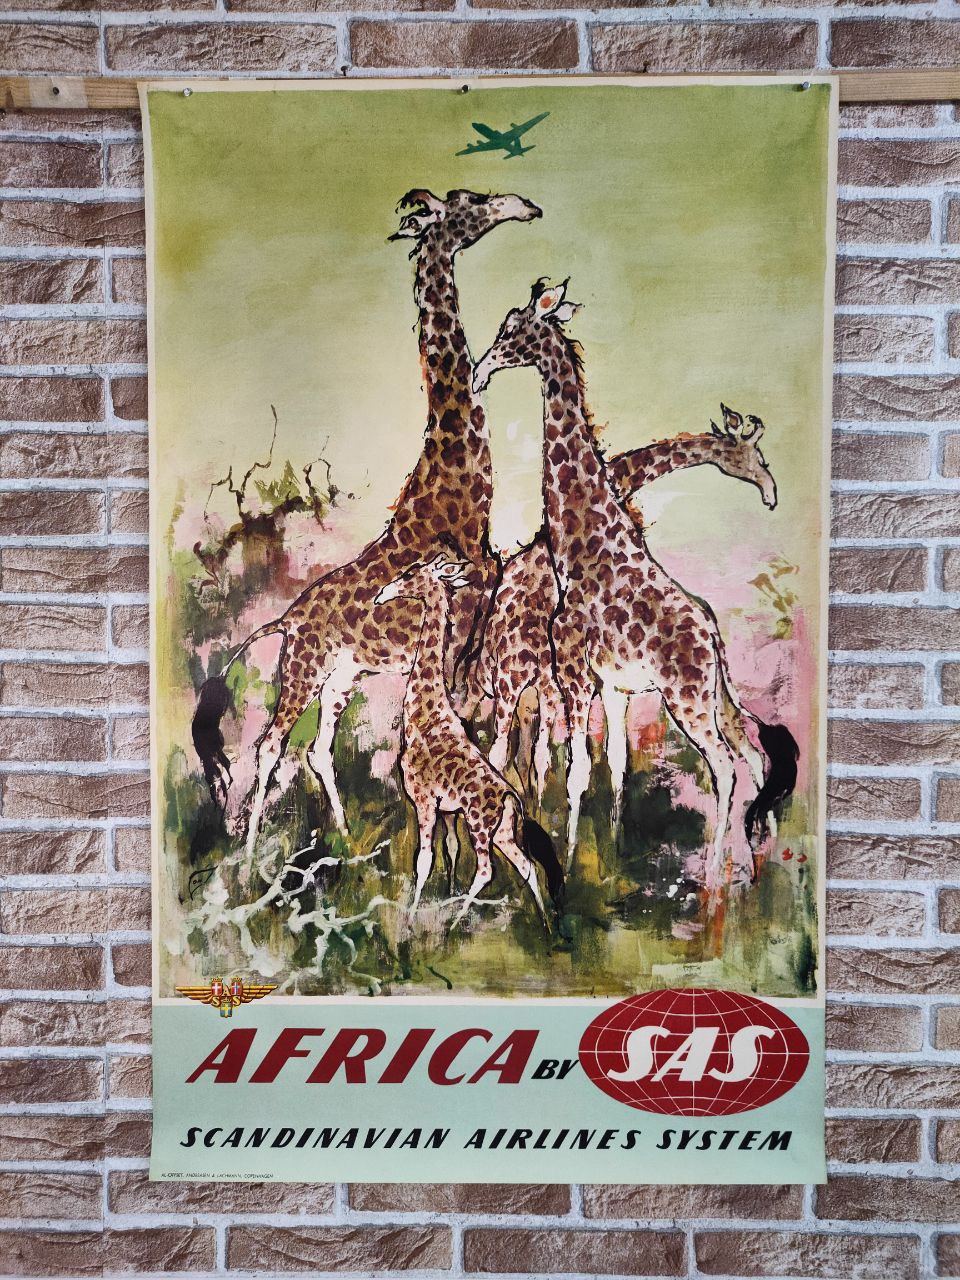 Manifesto originale pubblicitario - SAS - Africa